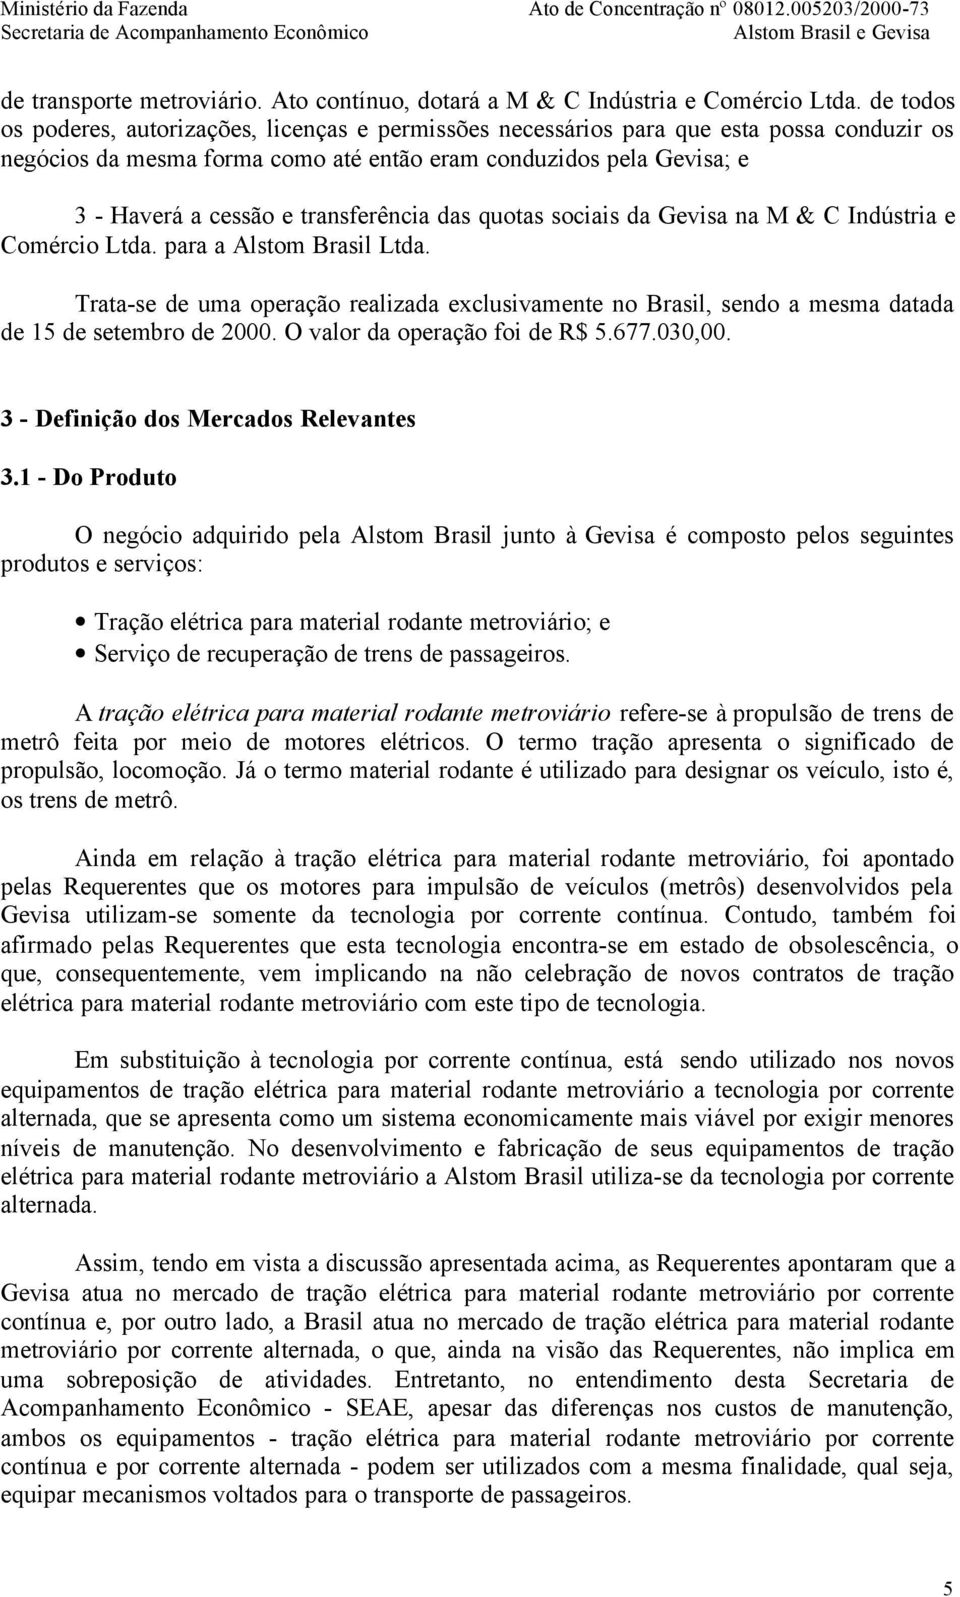 transferência das quotas sociais da Gevisa na M & C Indústria e Comércio Ltda. para a Alstom Brasil Ltda.